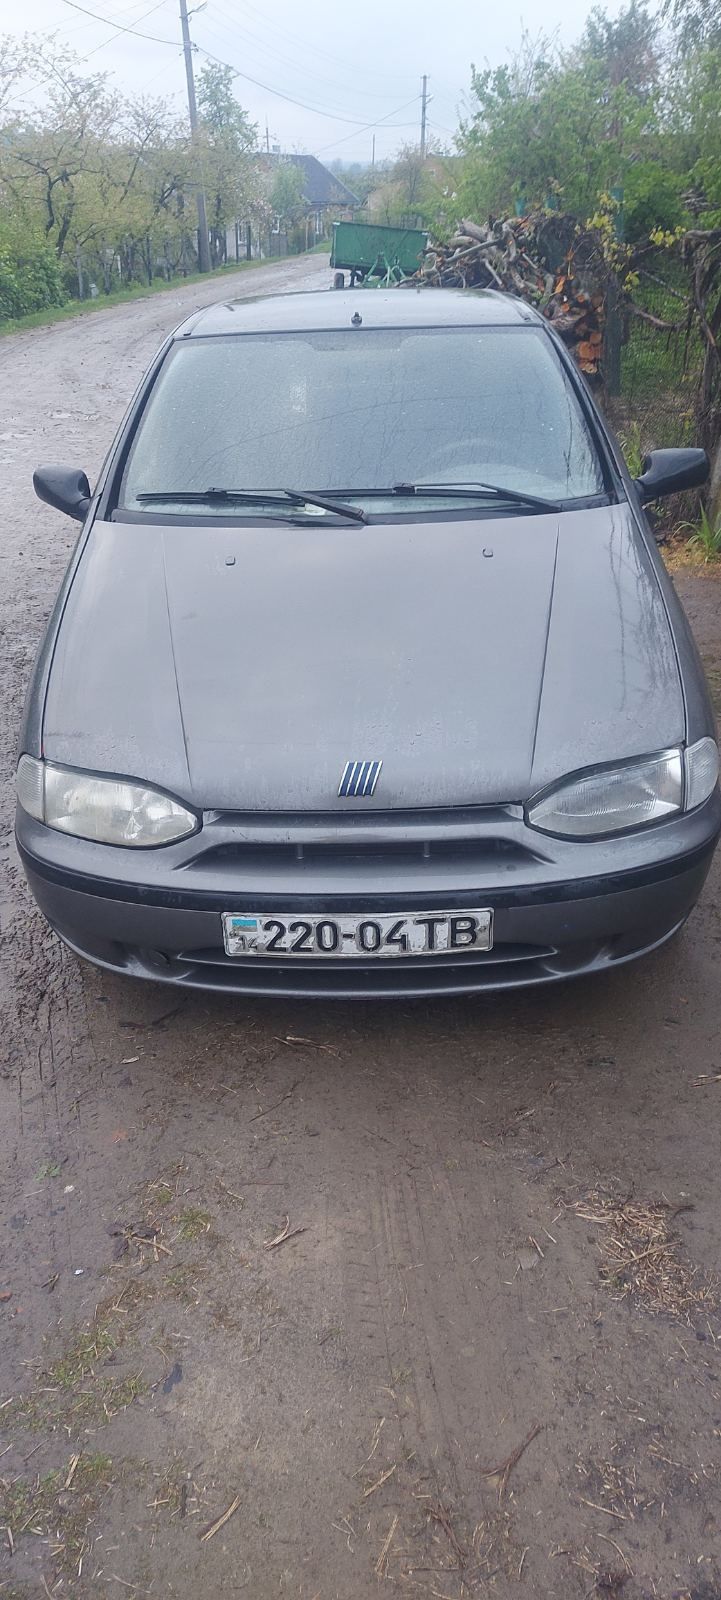 Fiat Siena 1.6 16v